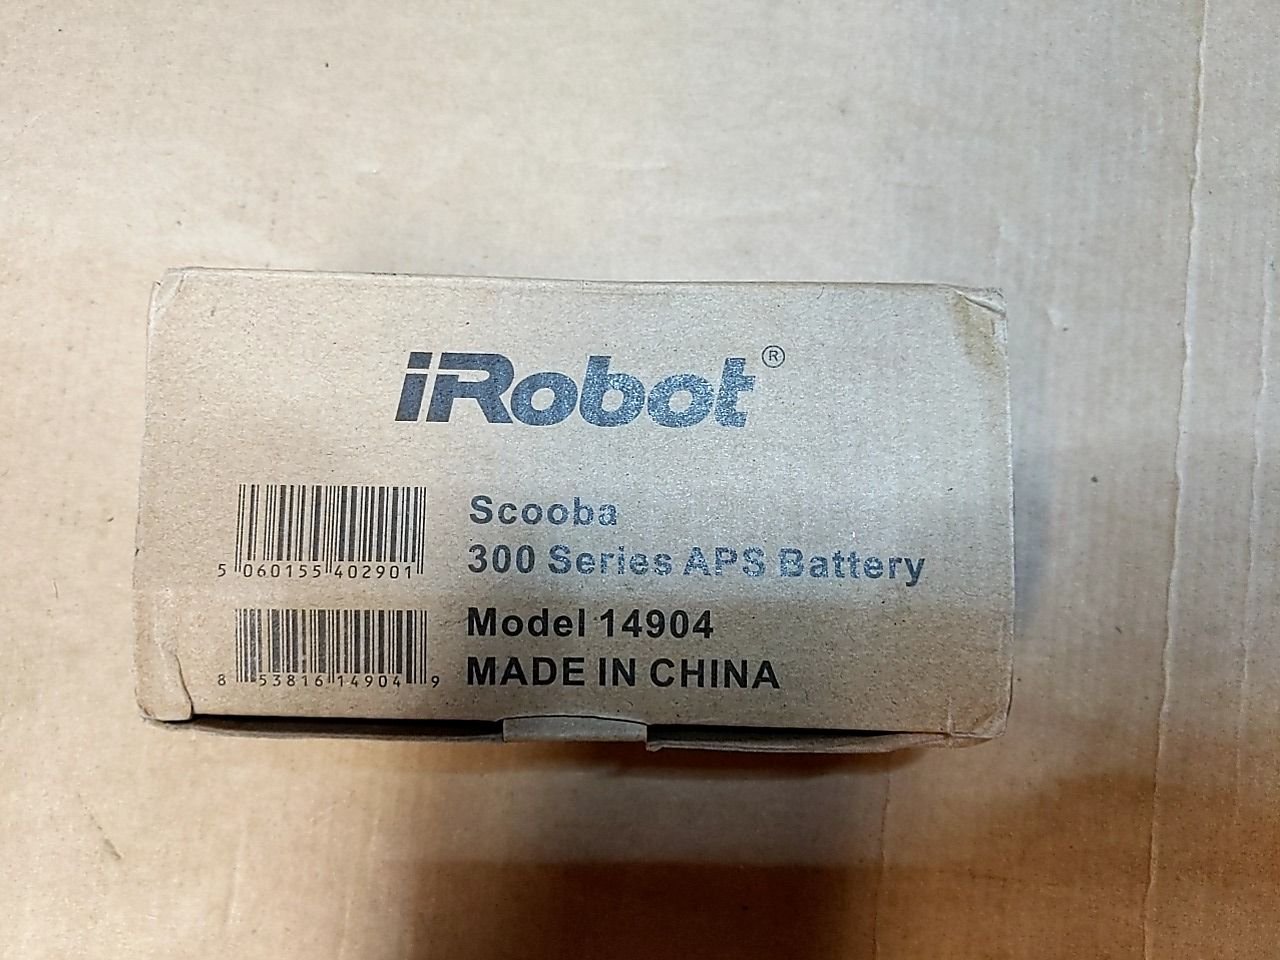 Náhradní baterie k vysavači iRobot iRobot Scooba 300 Series APS Battery